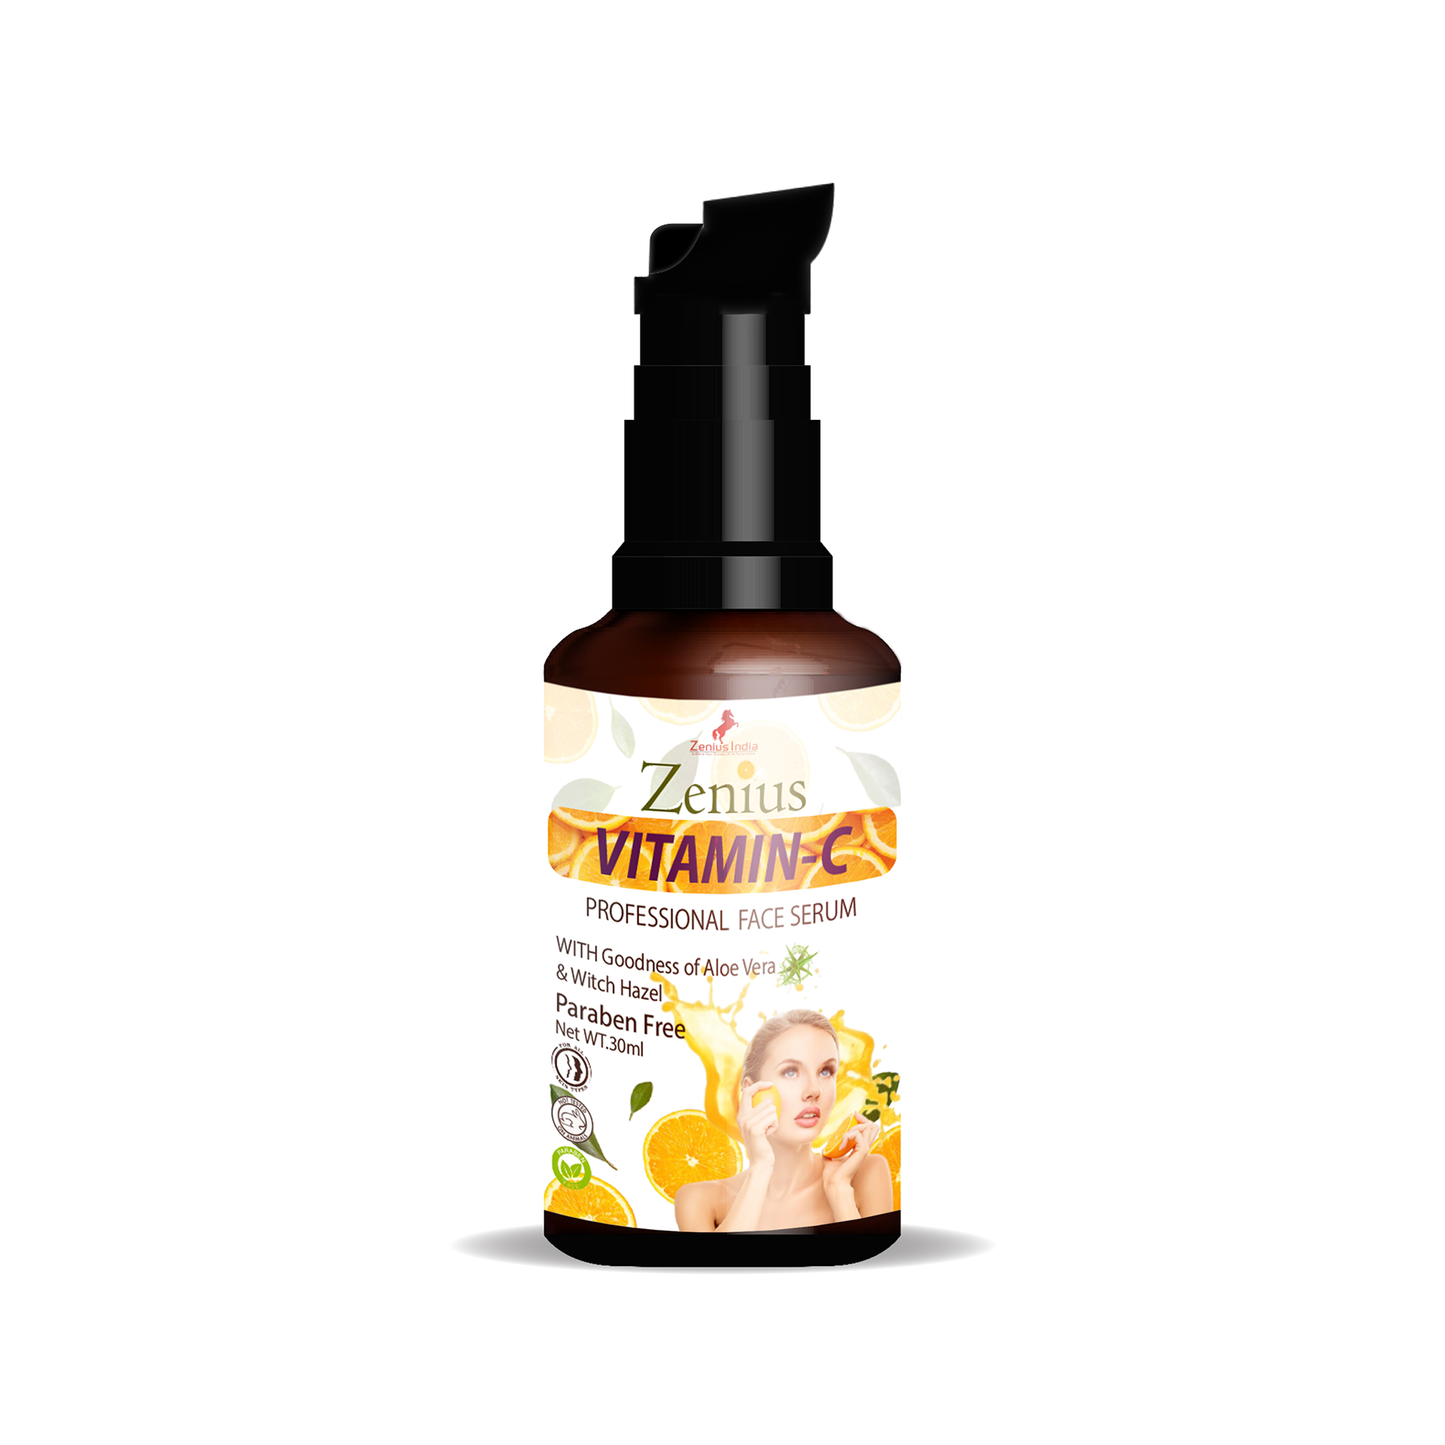 Zenius Vitamin-C Professional Face Serum For Brightening and Even Skin Tone, 30ml